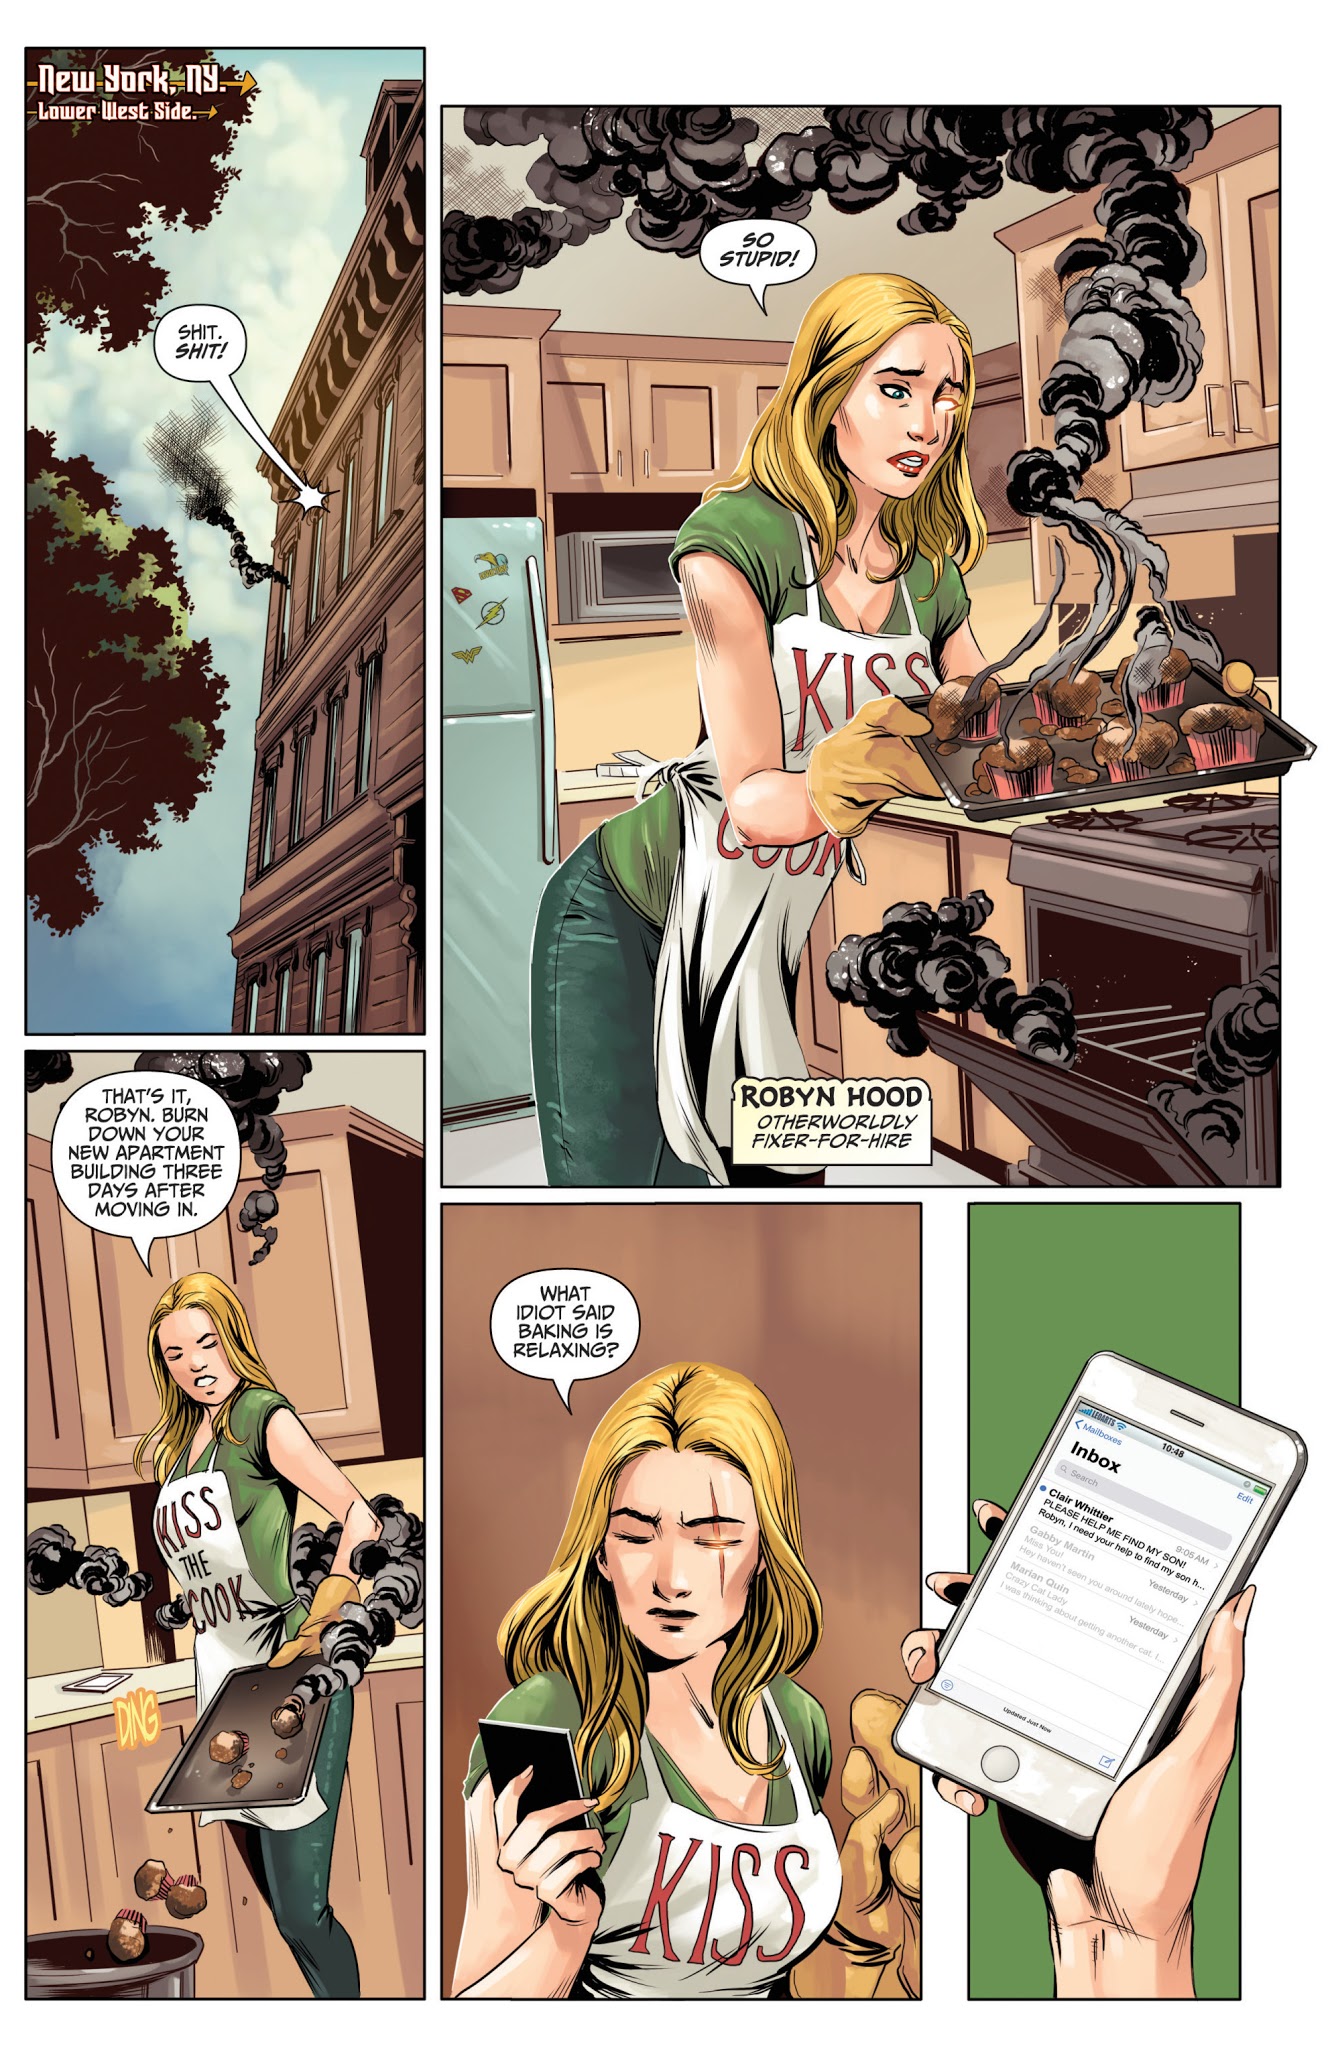 Read online Van Helsing vs. Robyn Hood comic -  Issue #1 - 8